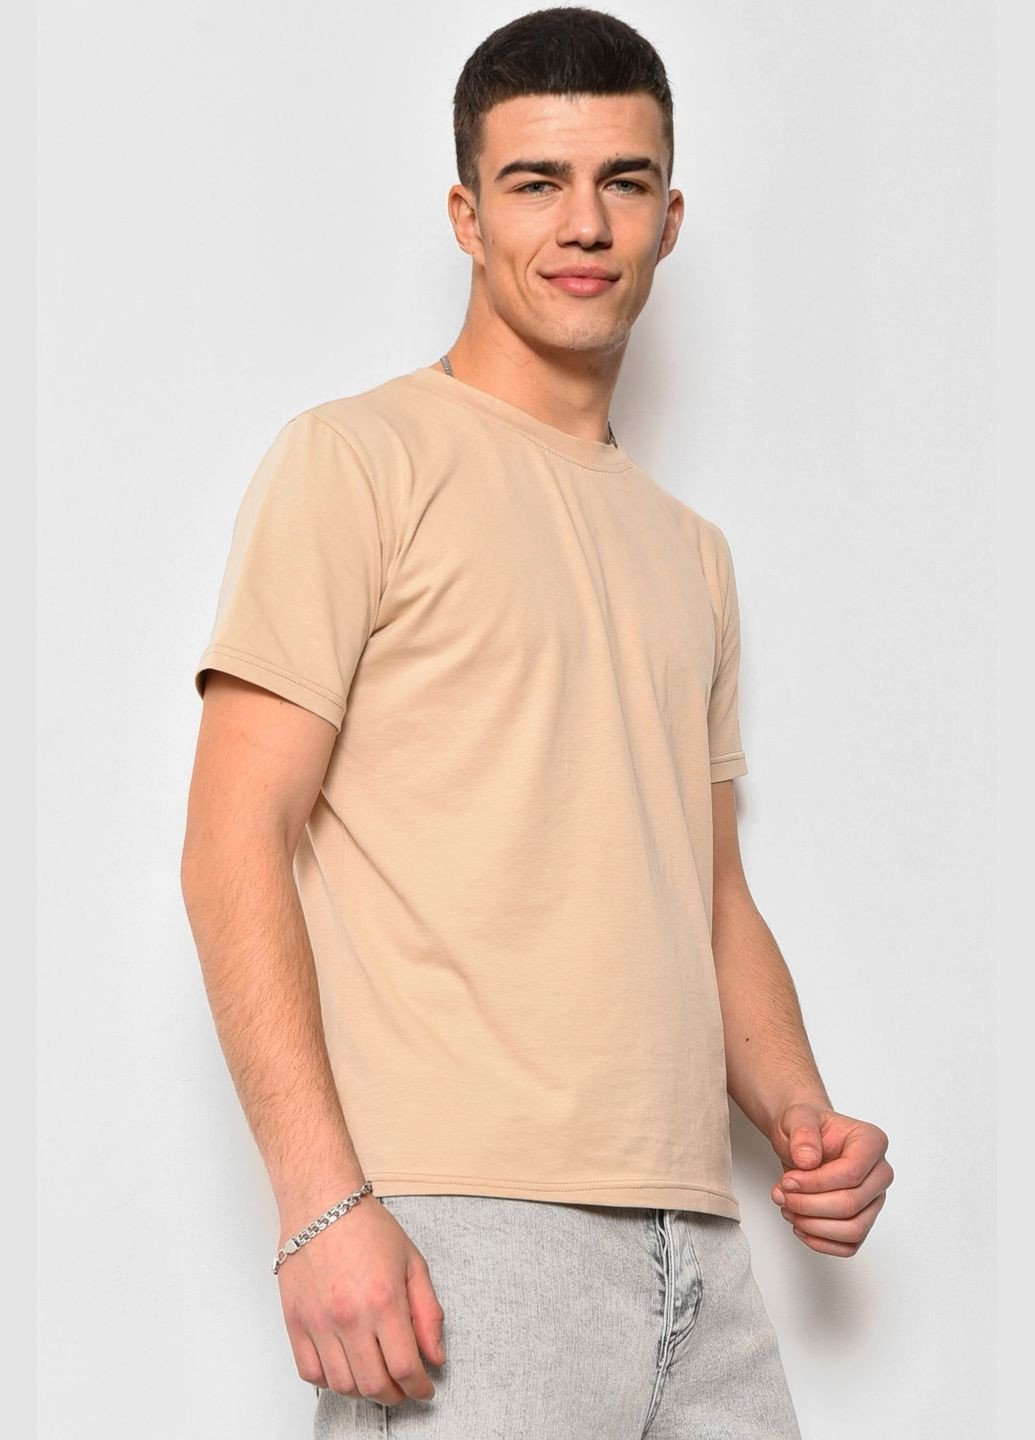 Бежевая футболка мужская бежевого цвета Let's Shop